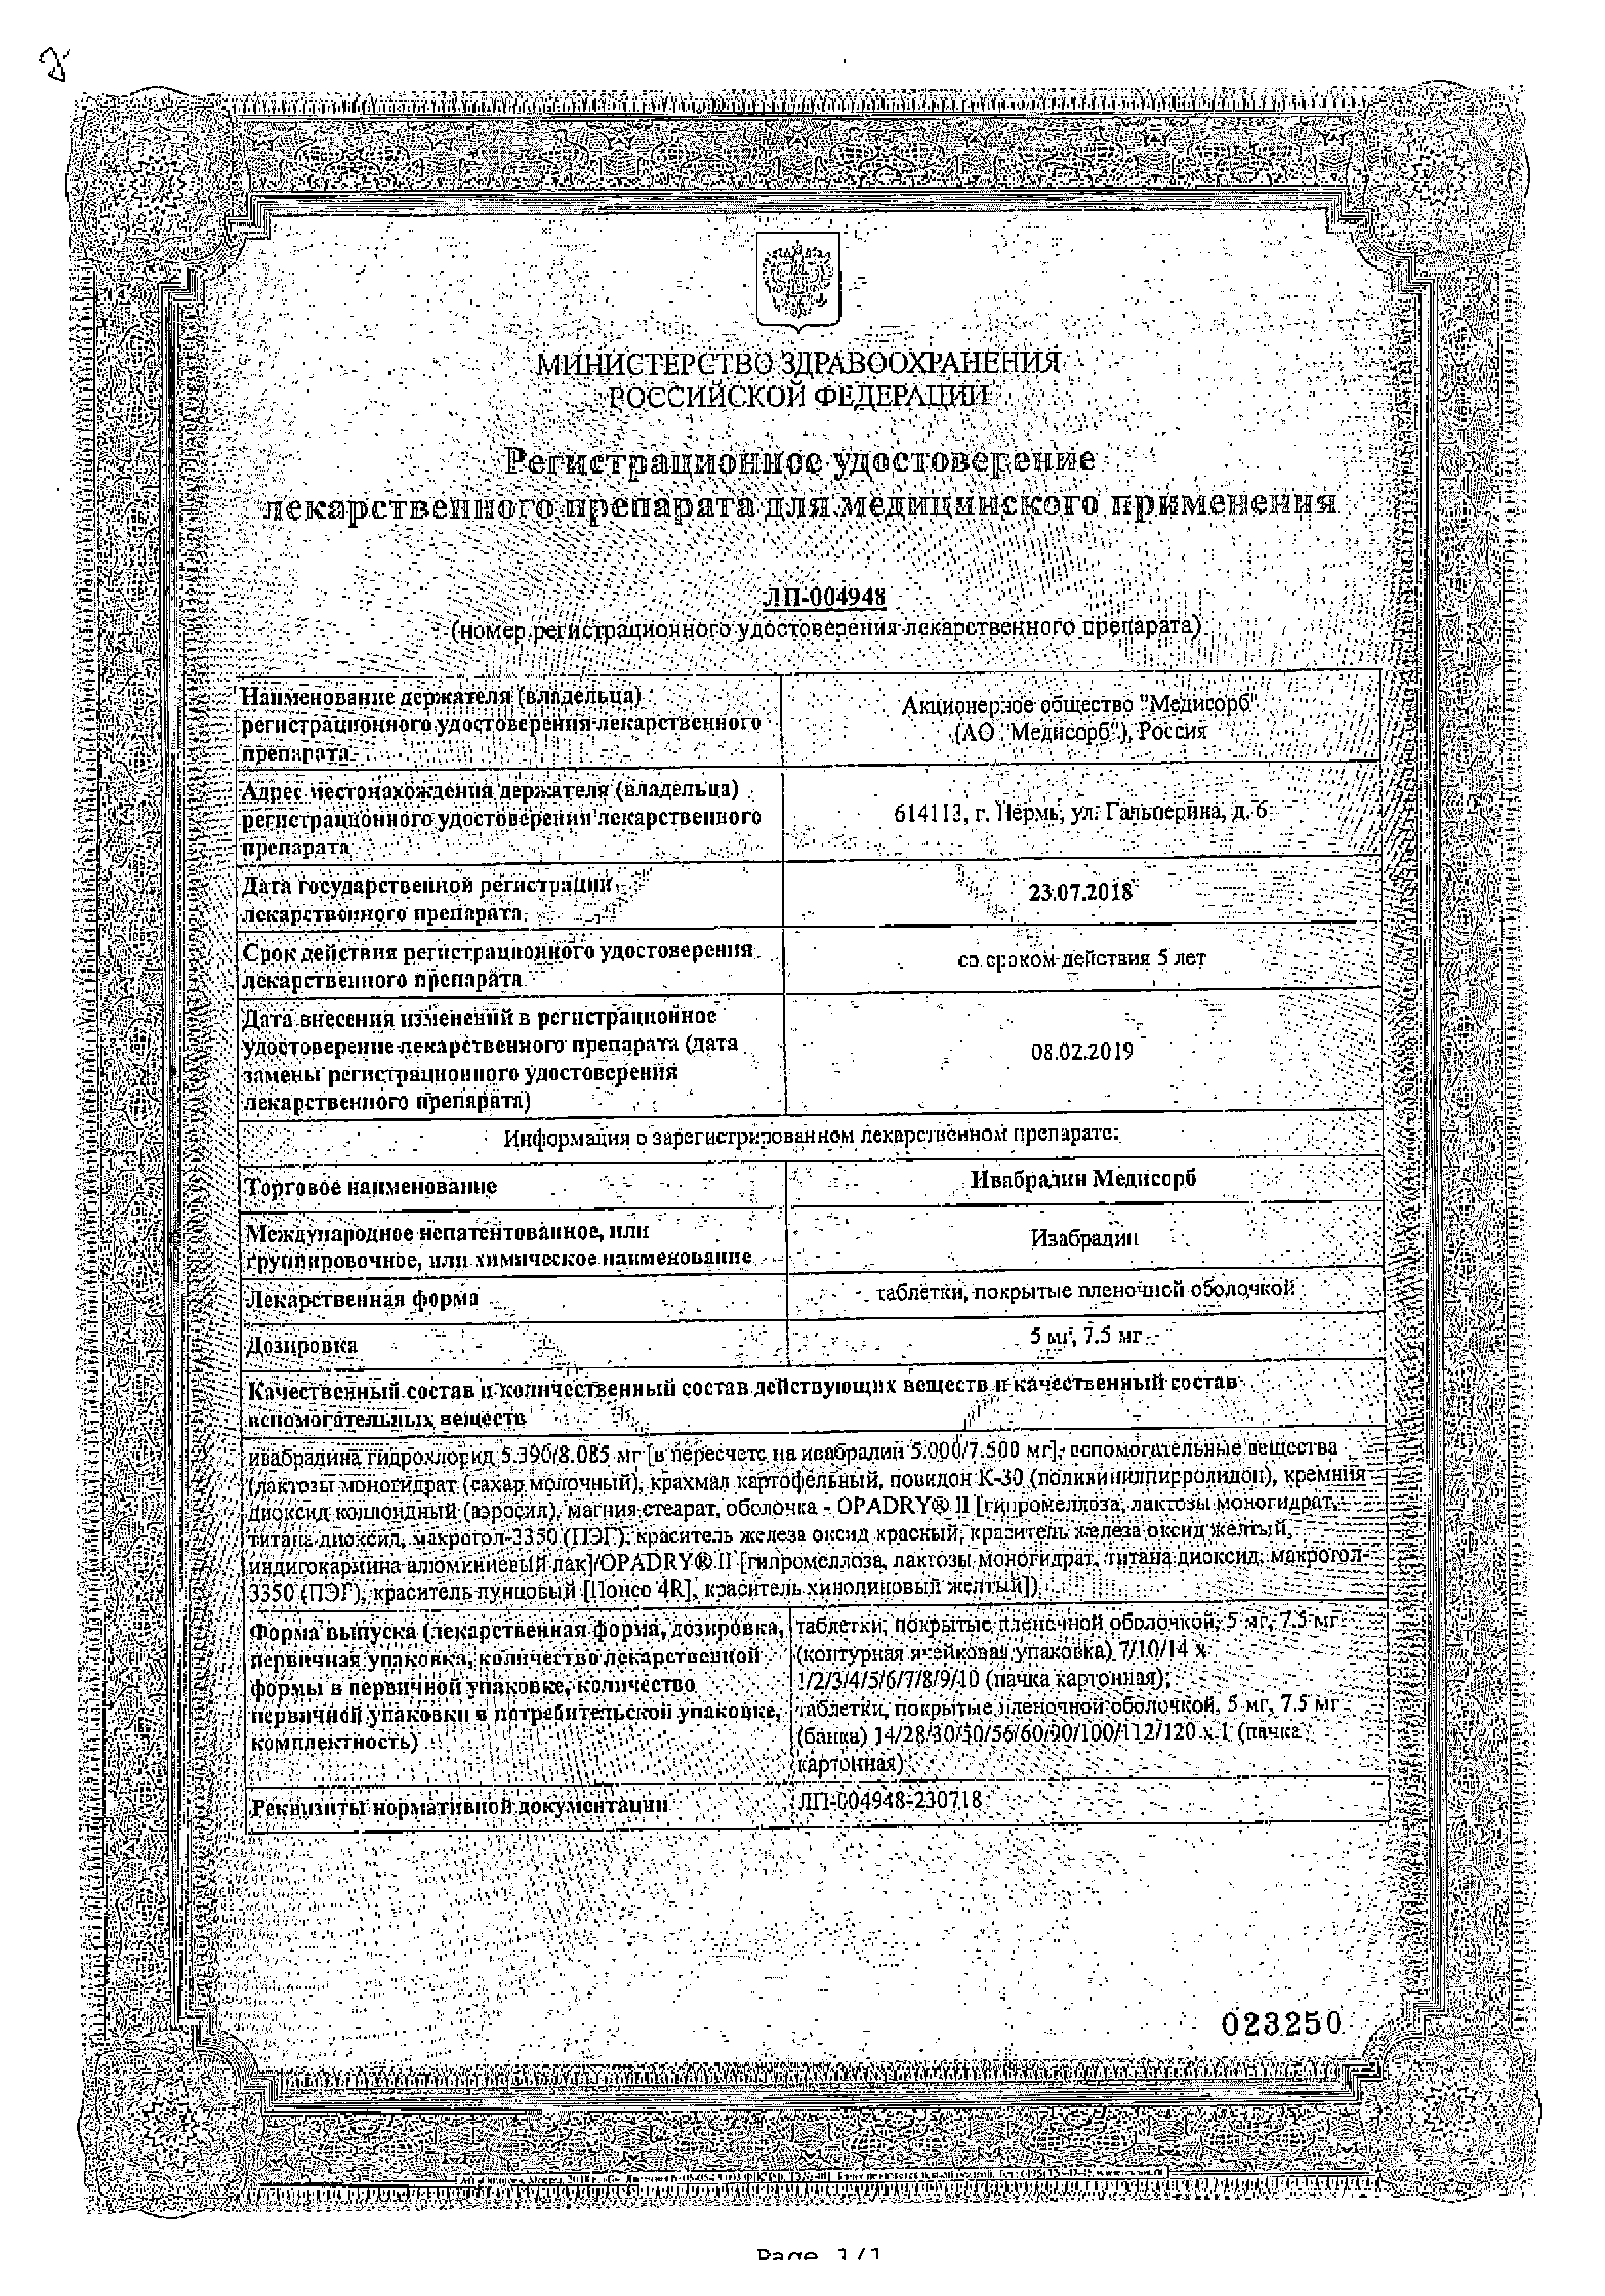 Ивабрадин сертификат